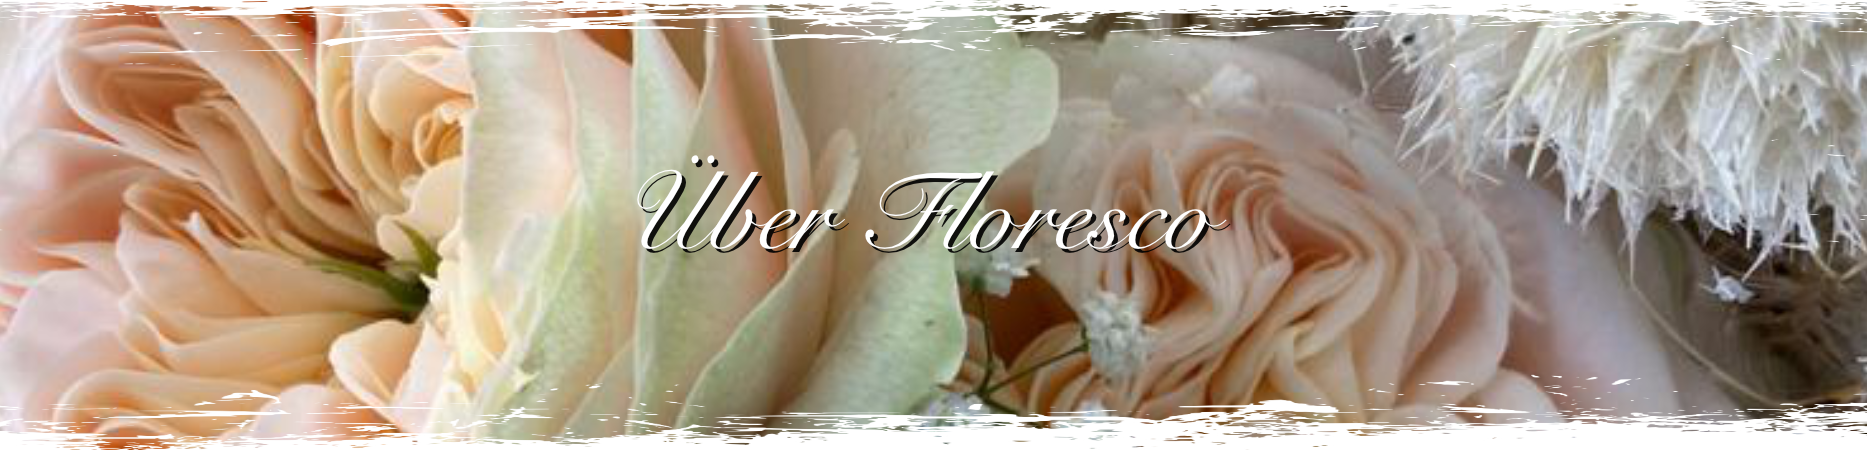 Banner mit Blumen und dem Text Über Floresco